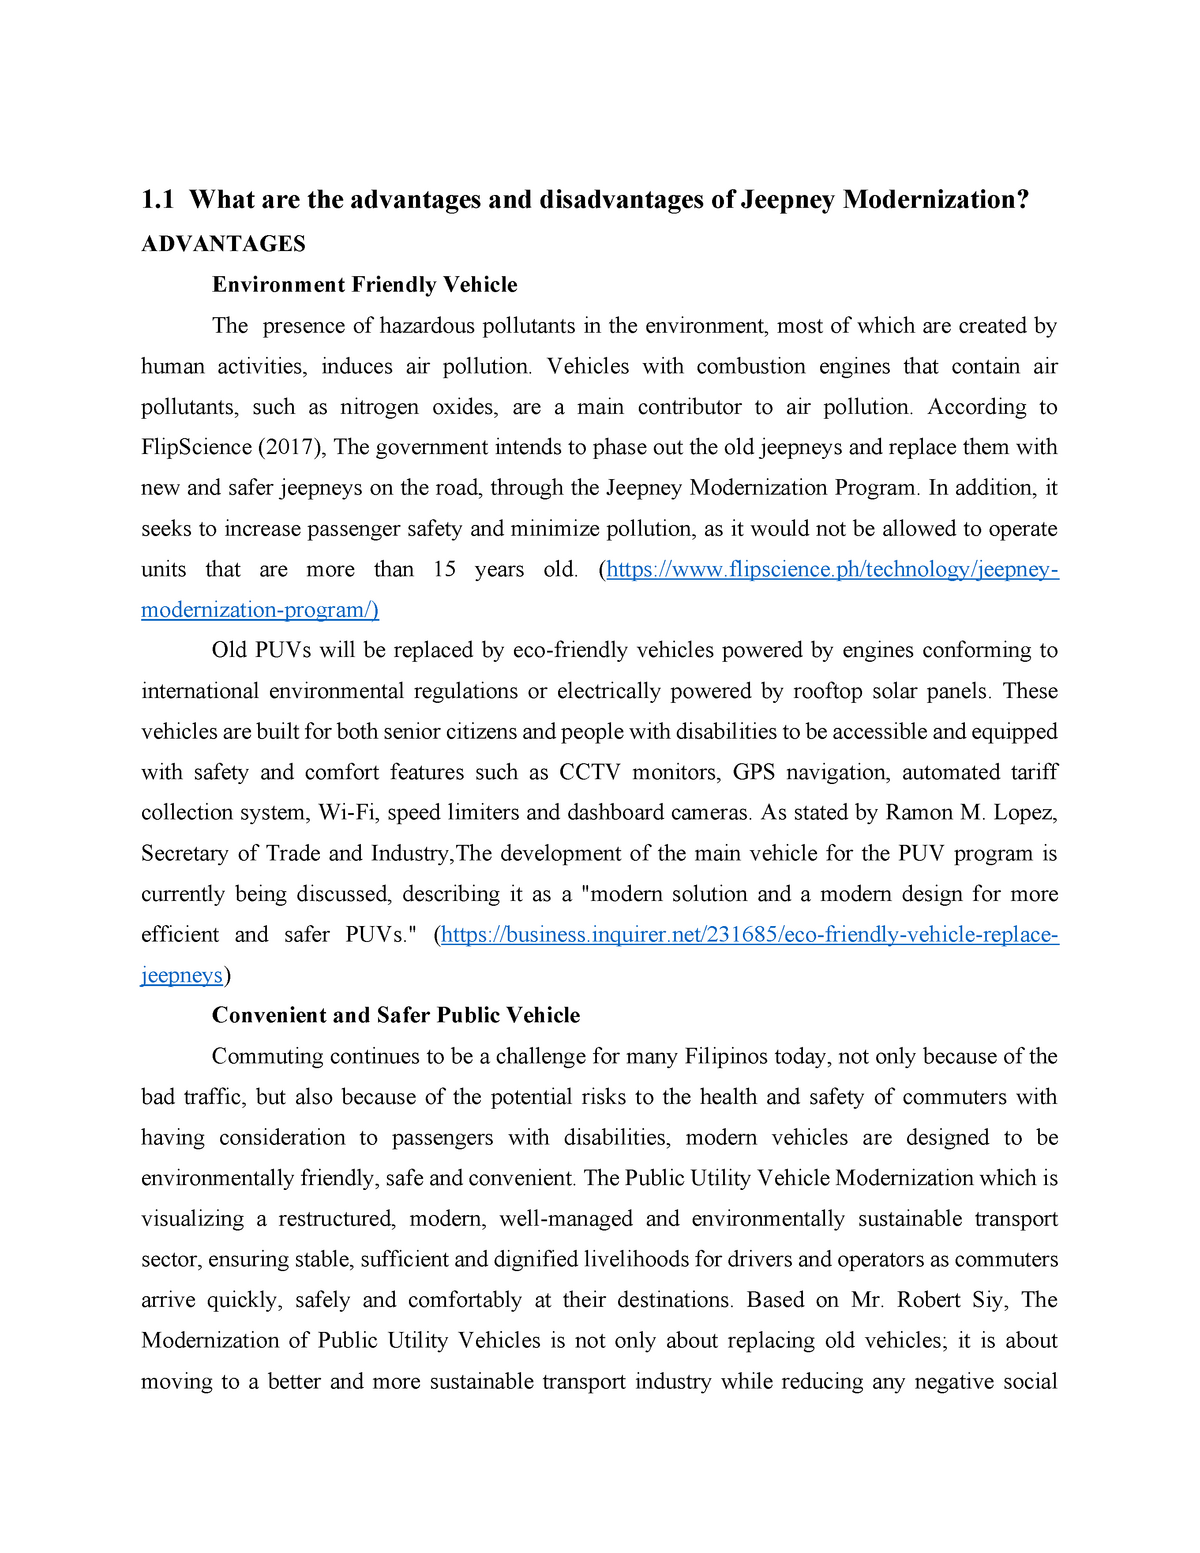 research paper about jeepney modernization pdf